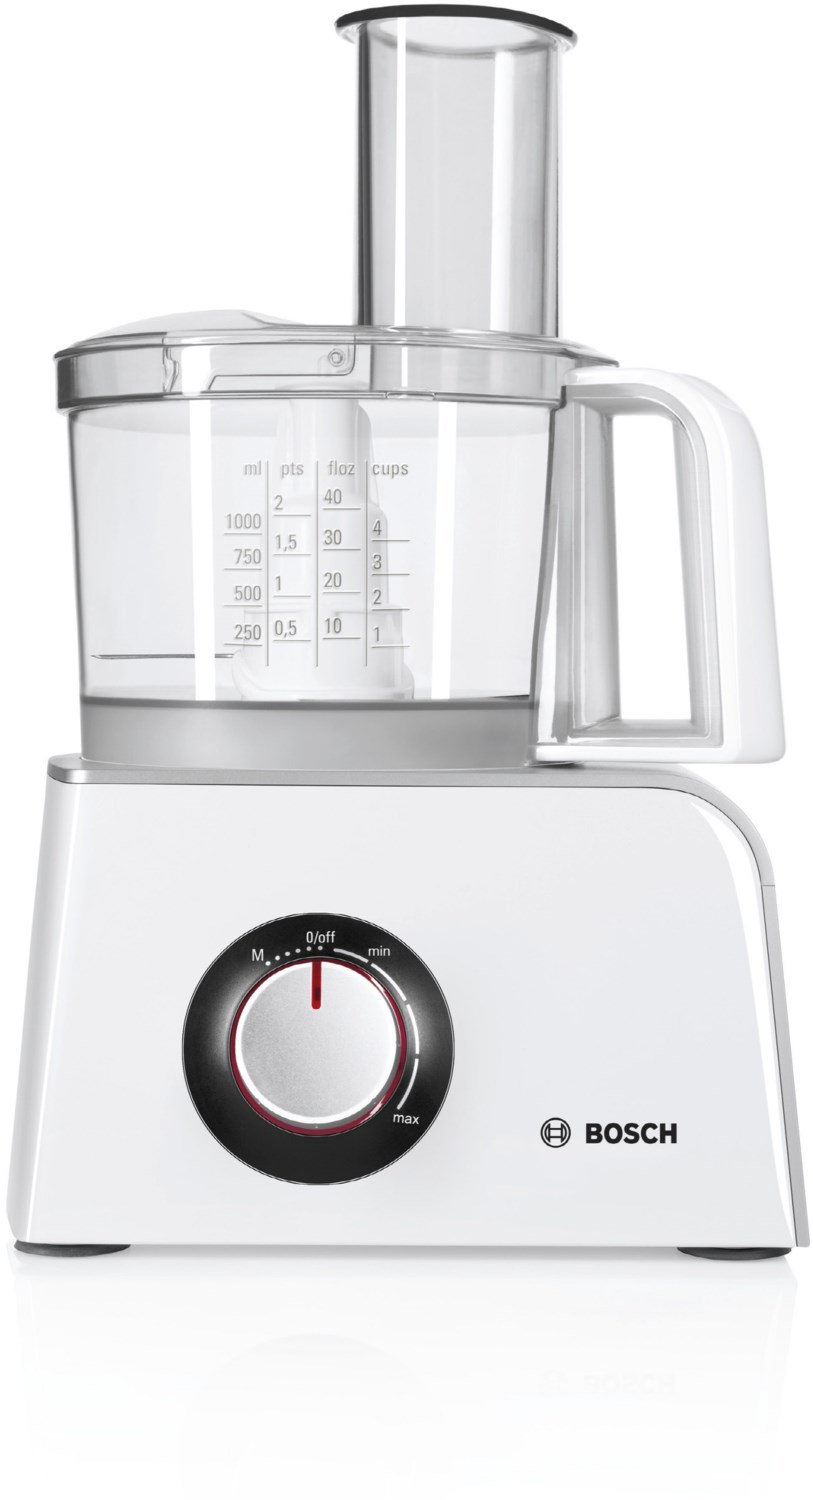 Bosch MCM4 Kompakt-Küchenmaschine Styline weiß/grau